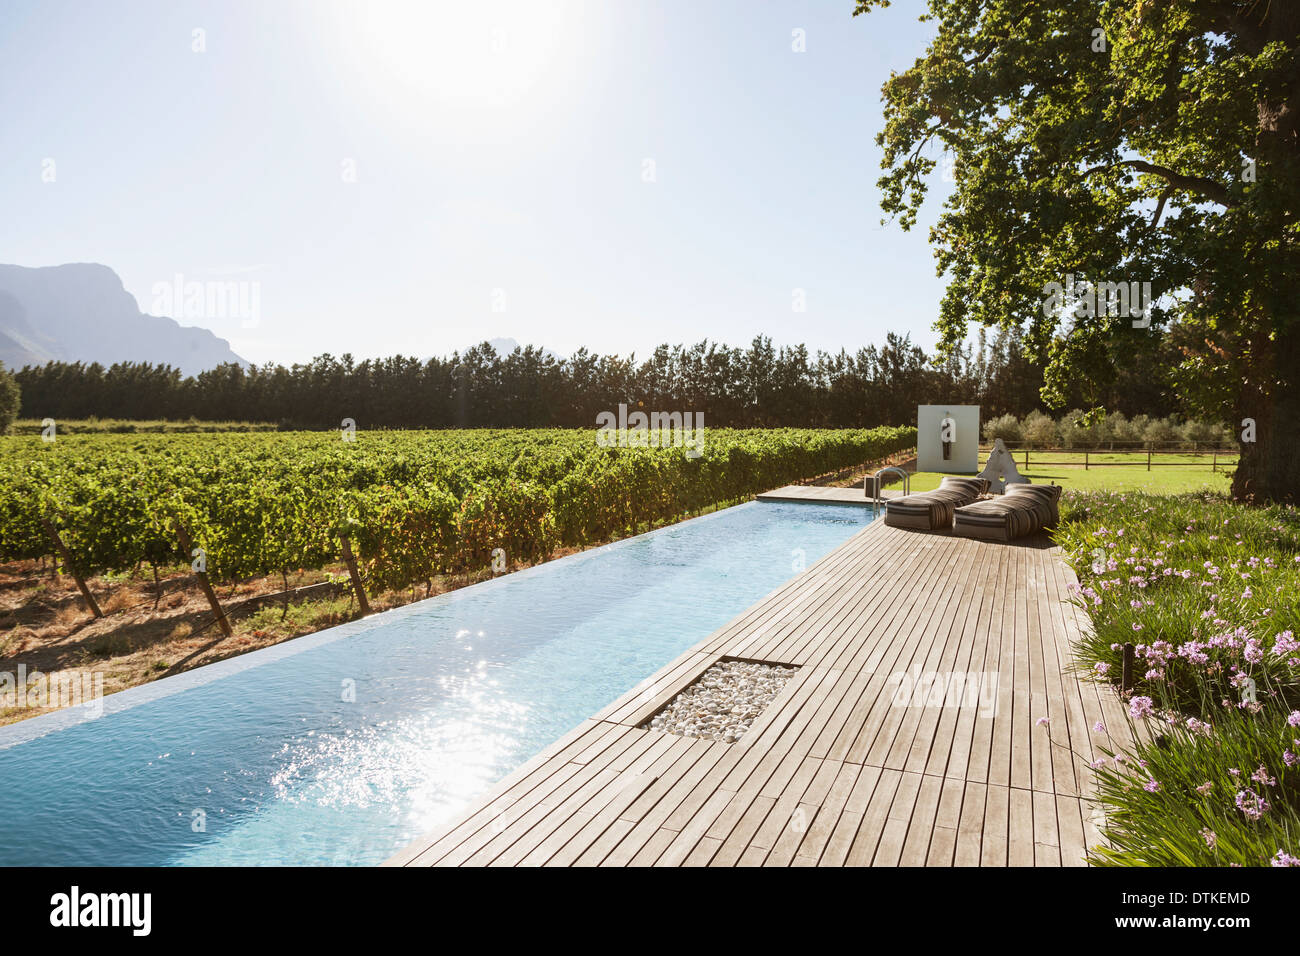 Luxury lap pool among garden and vineyard Stock Photo